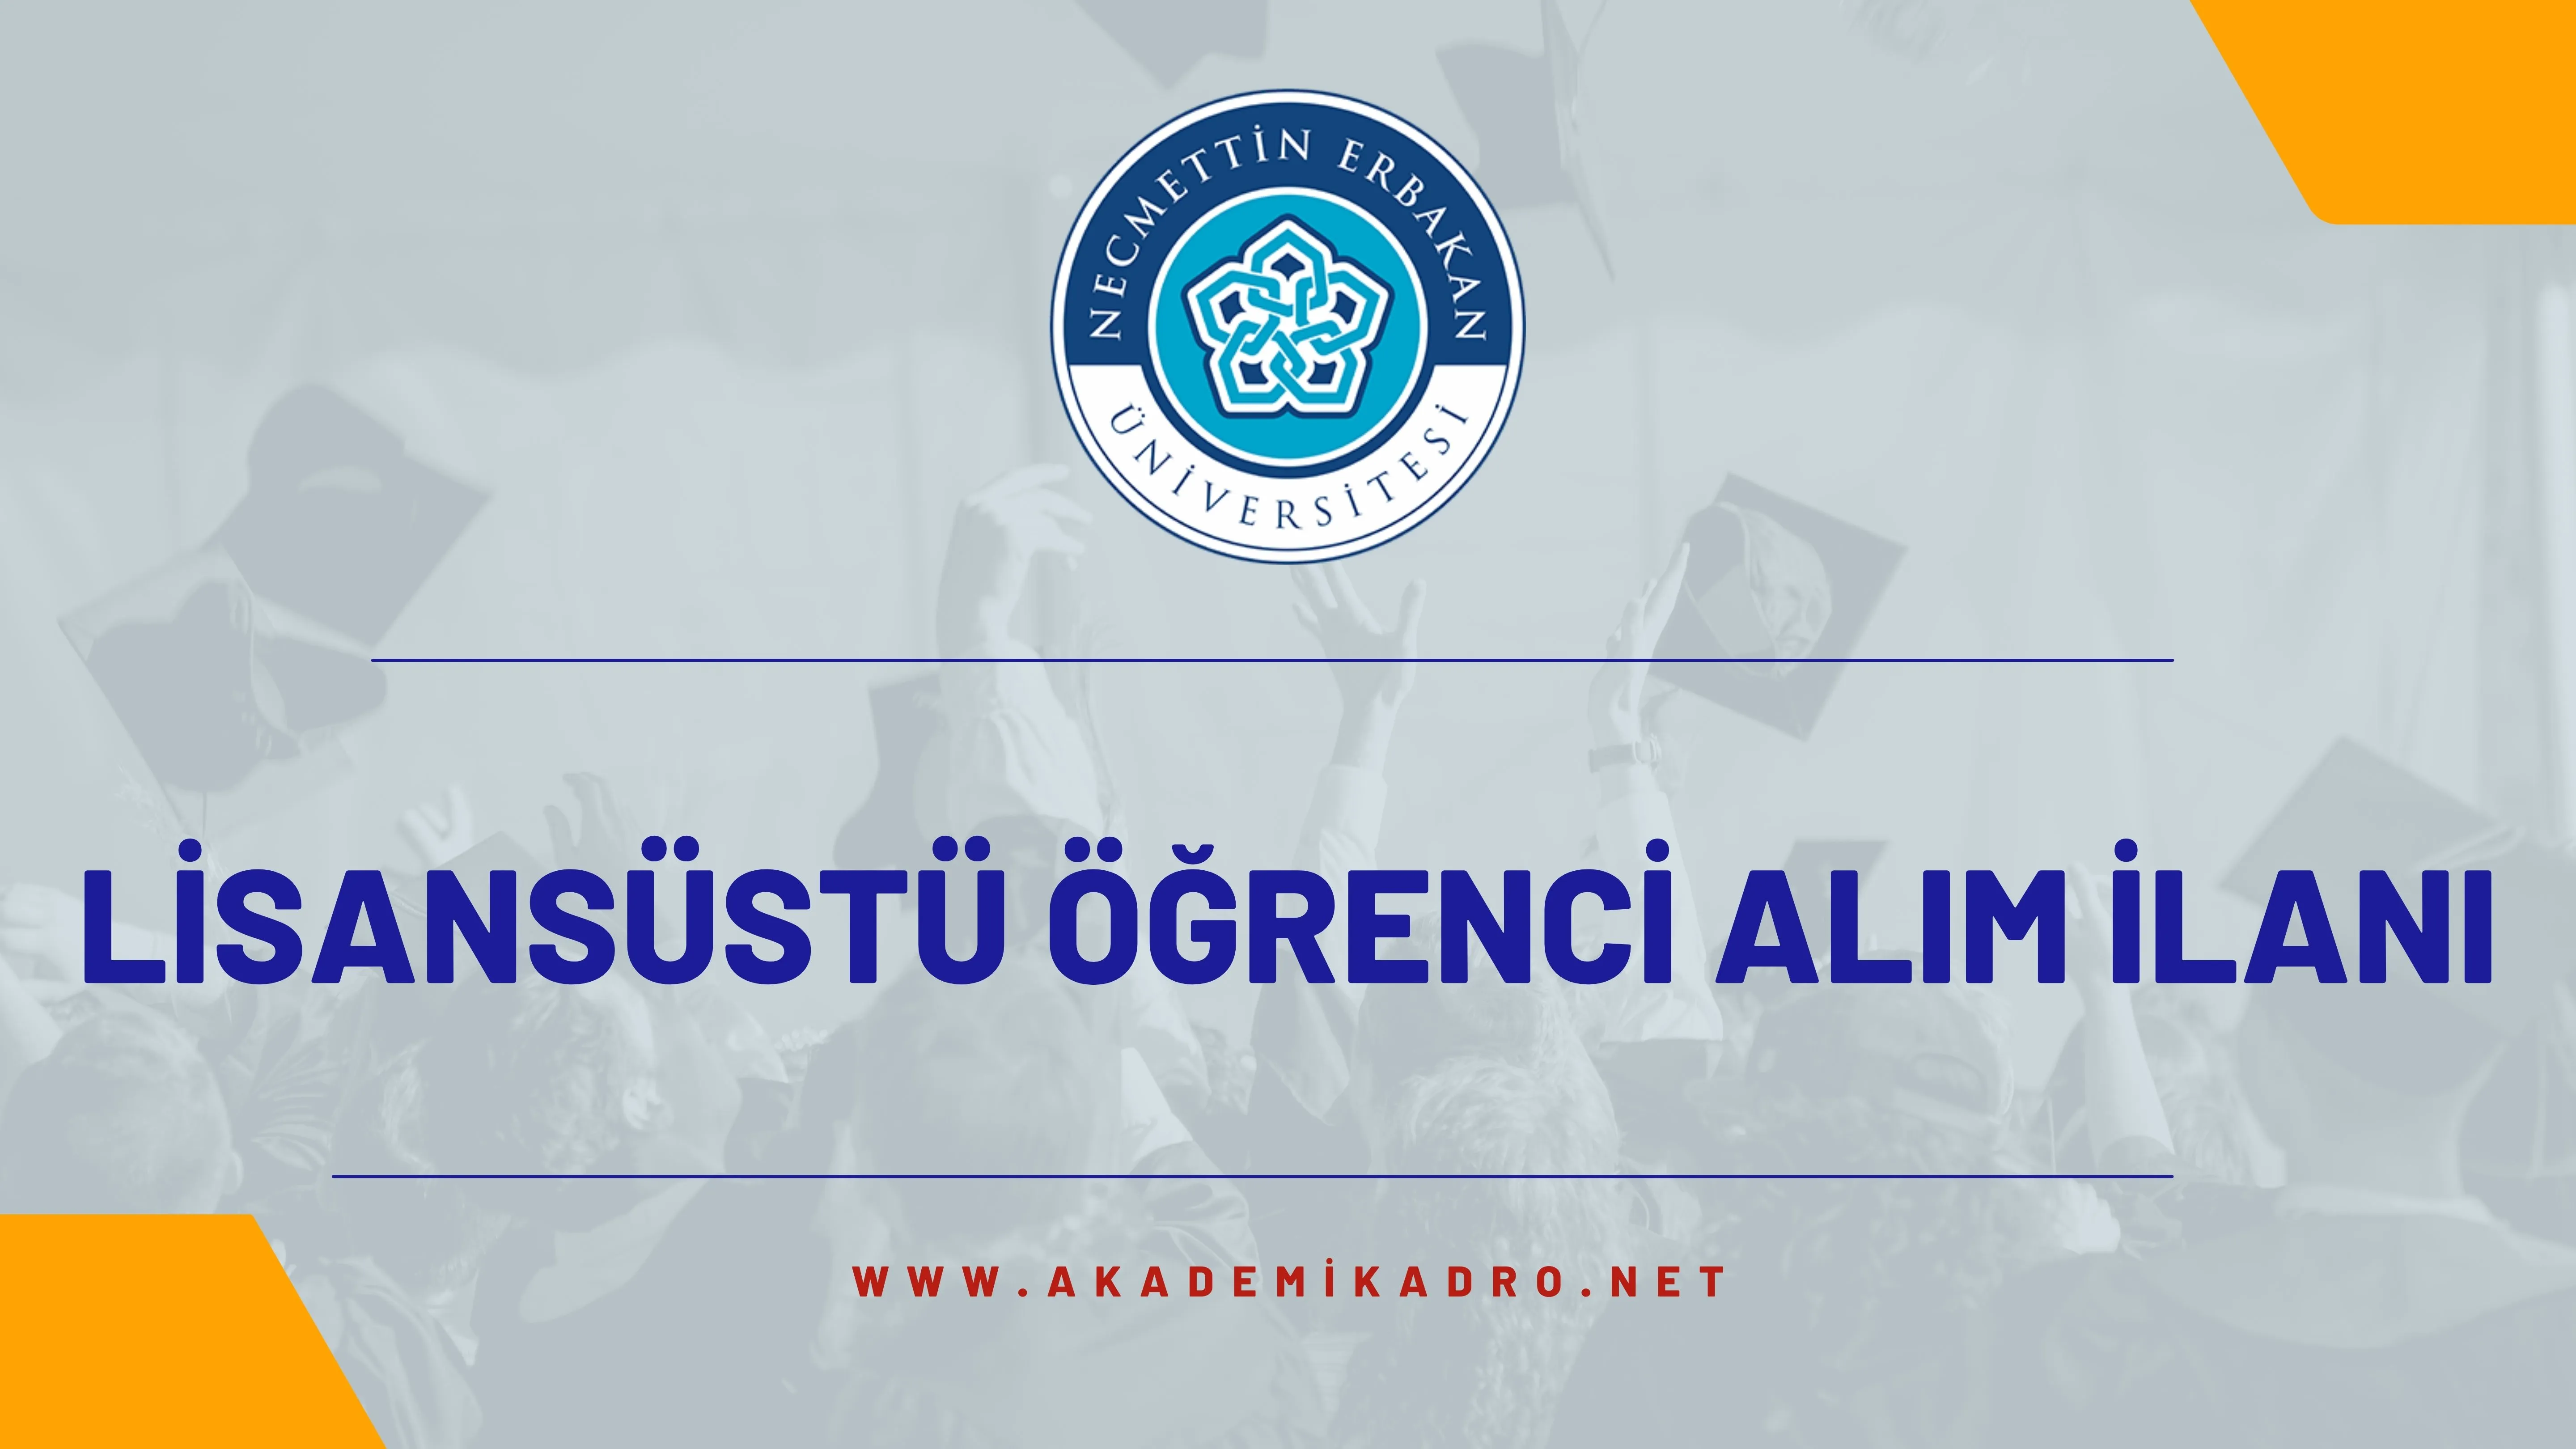 Konya Necmettin Erbakan Üniversitesi Sosyal Bilimler Enstitüsü Öğrenci Alım İlanı yayımlandı.